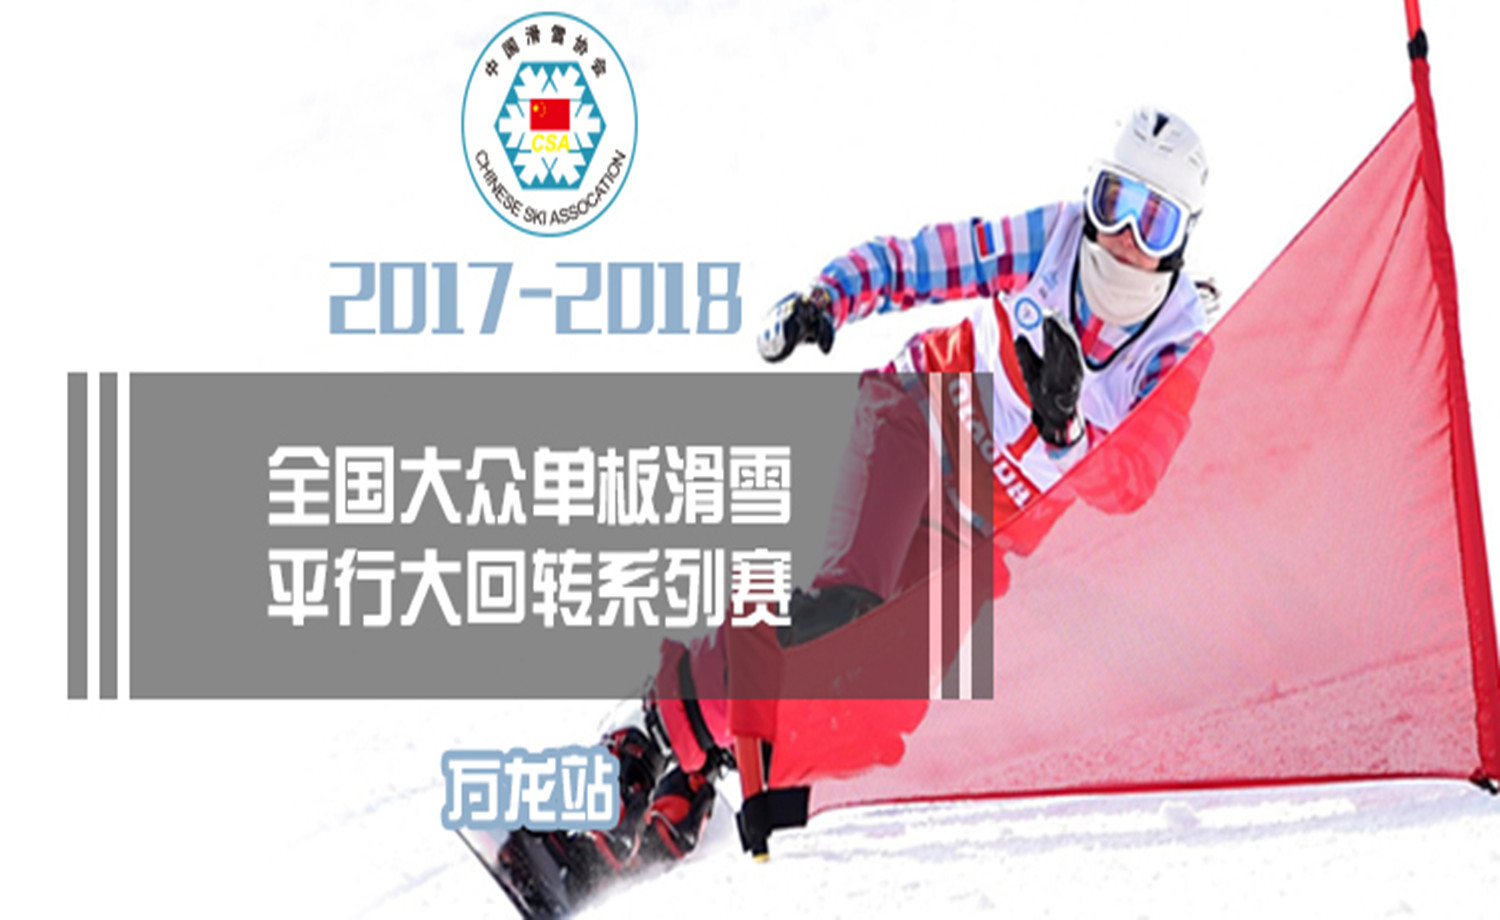 2017-2018年全国大众单板滑雪平行大回转系列赛-万龙站